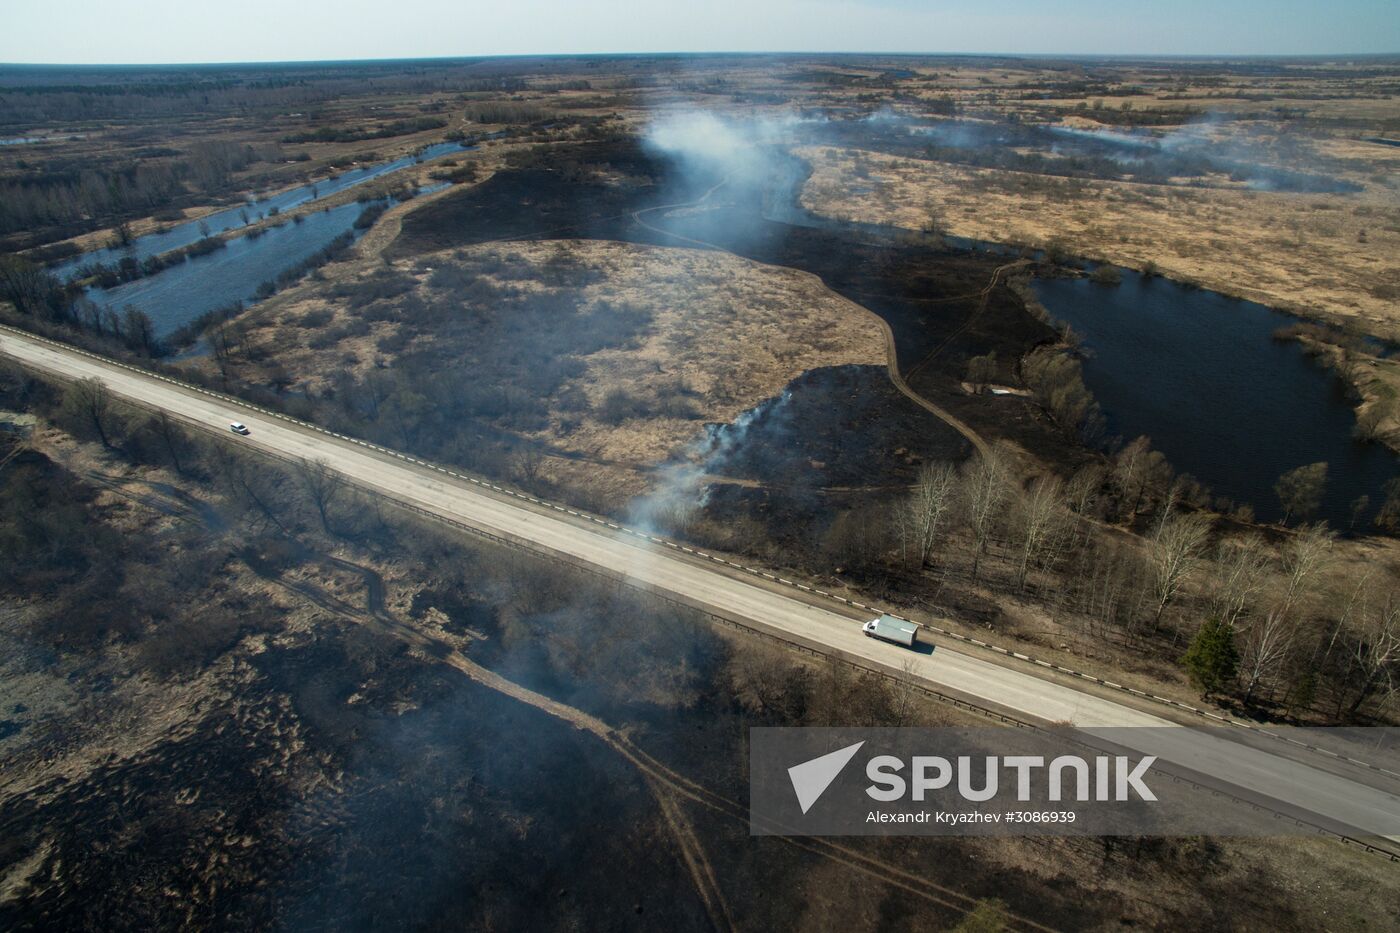 Wildfires in Novosibirsk Region